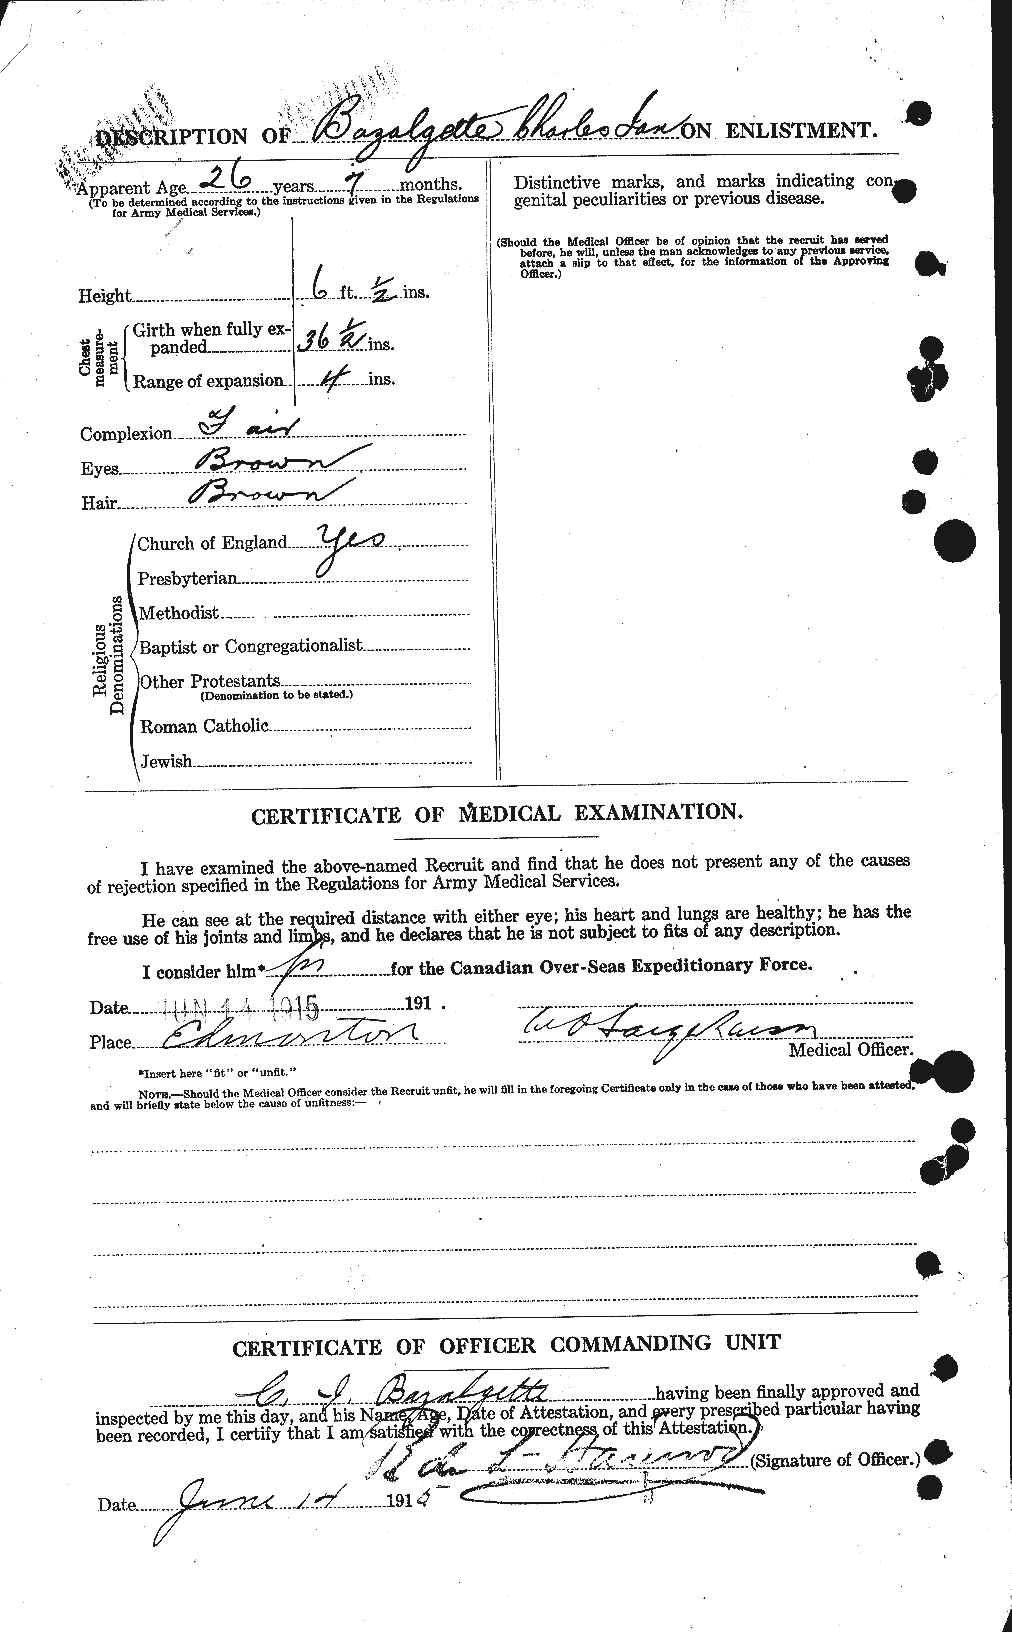 Dossiers du Personnel de la Première Guerre mondiale - CEC 229824b